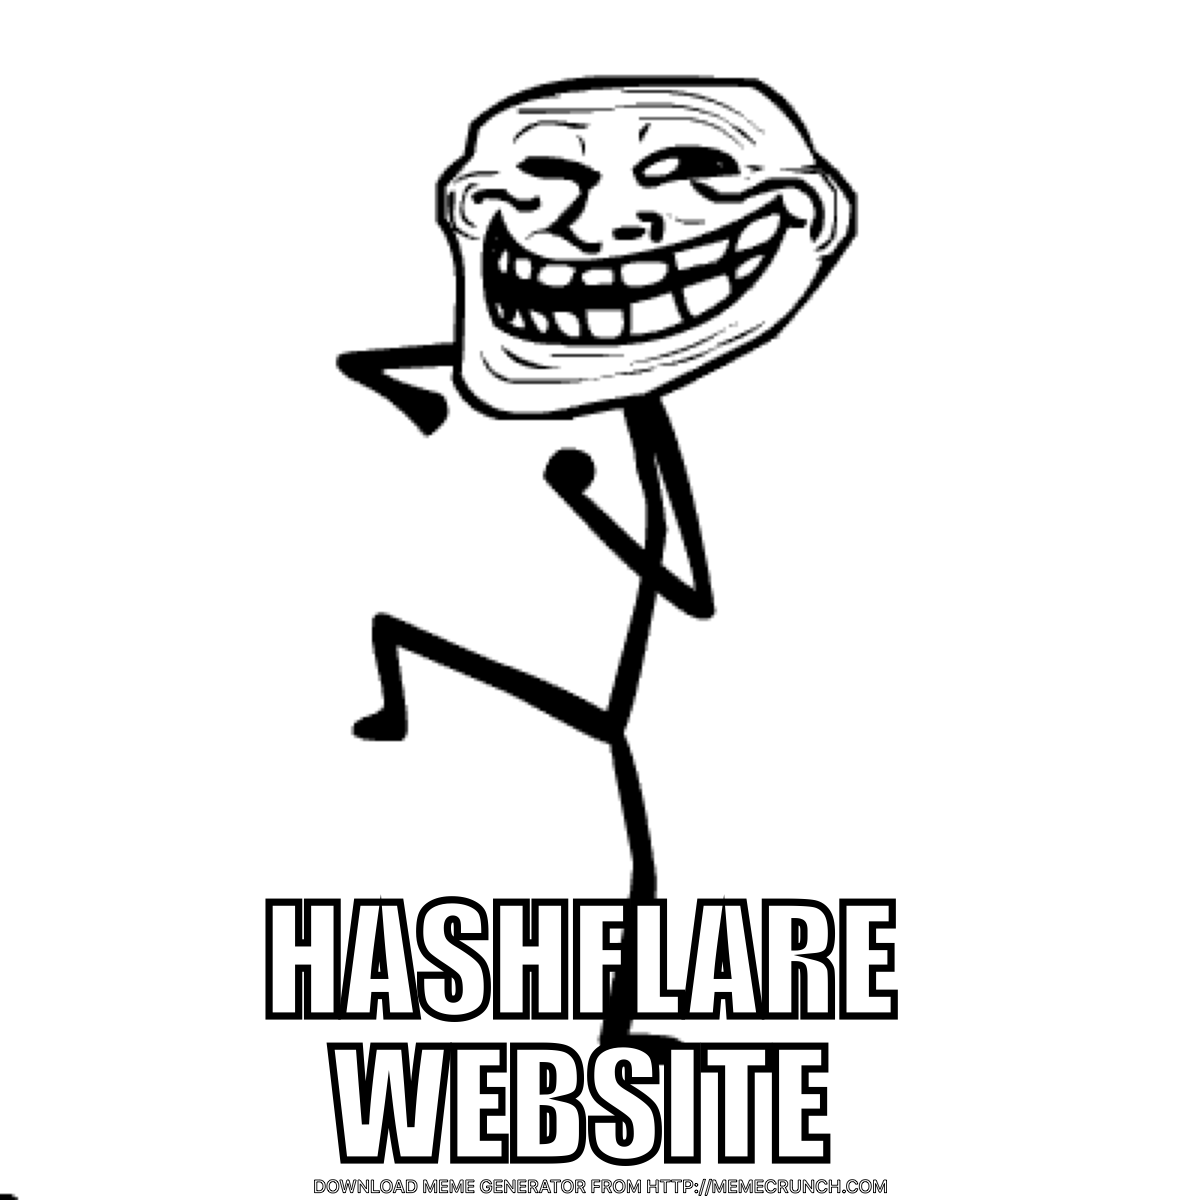 Hashflare Website Trolling Meme.